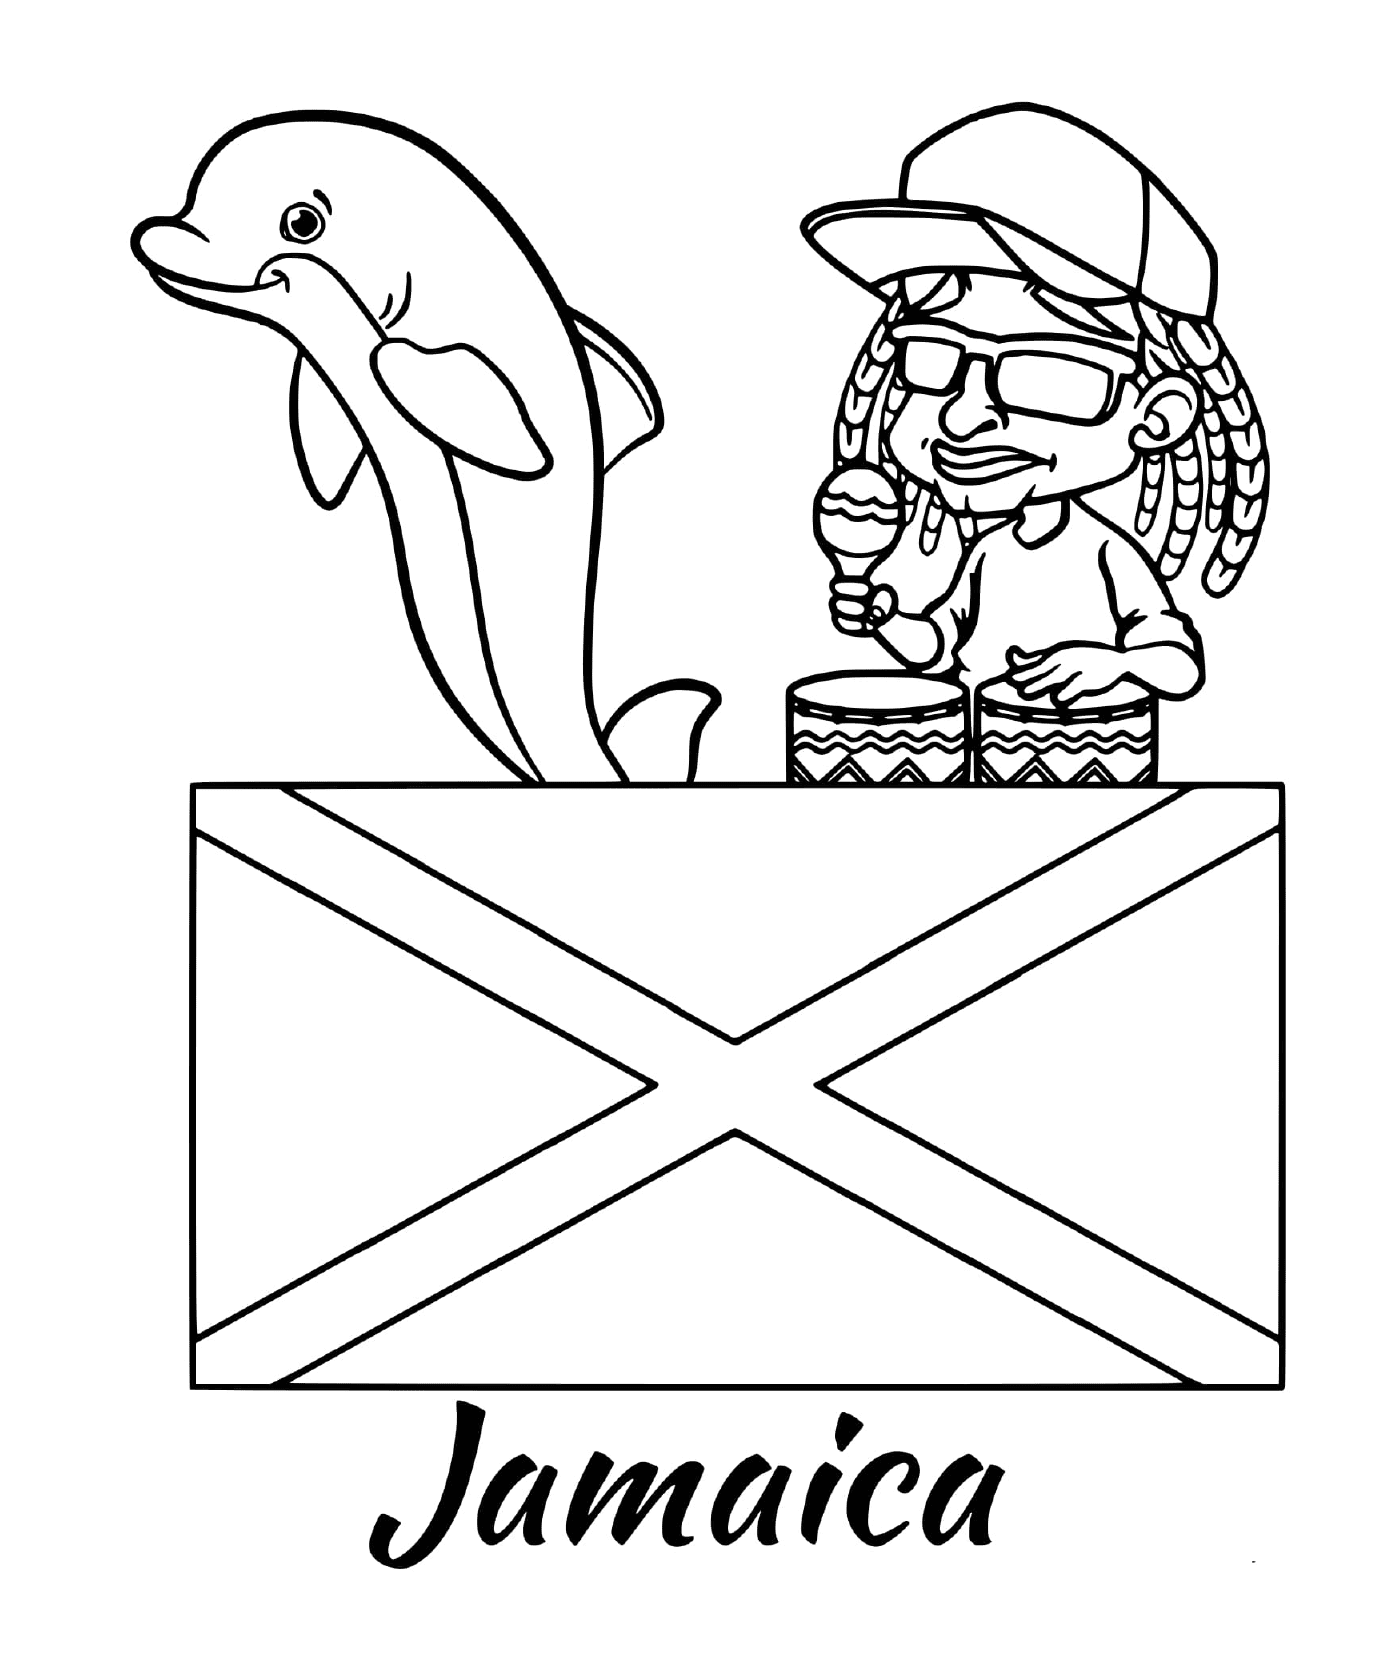  Bandiera della Giamaica, reggae 